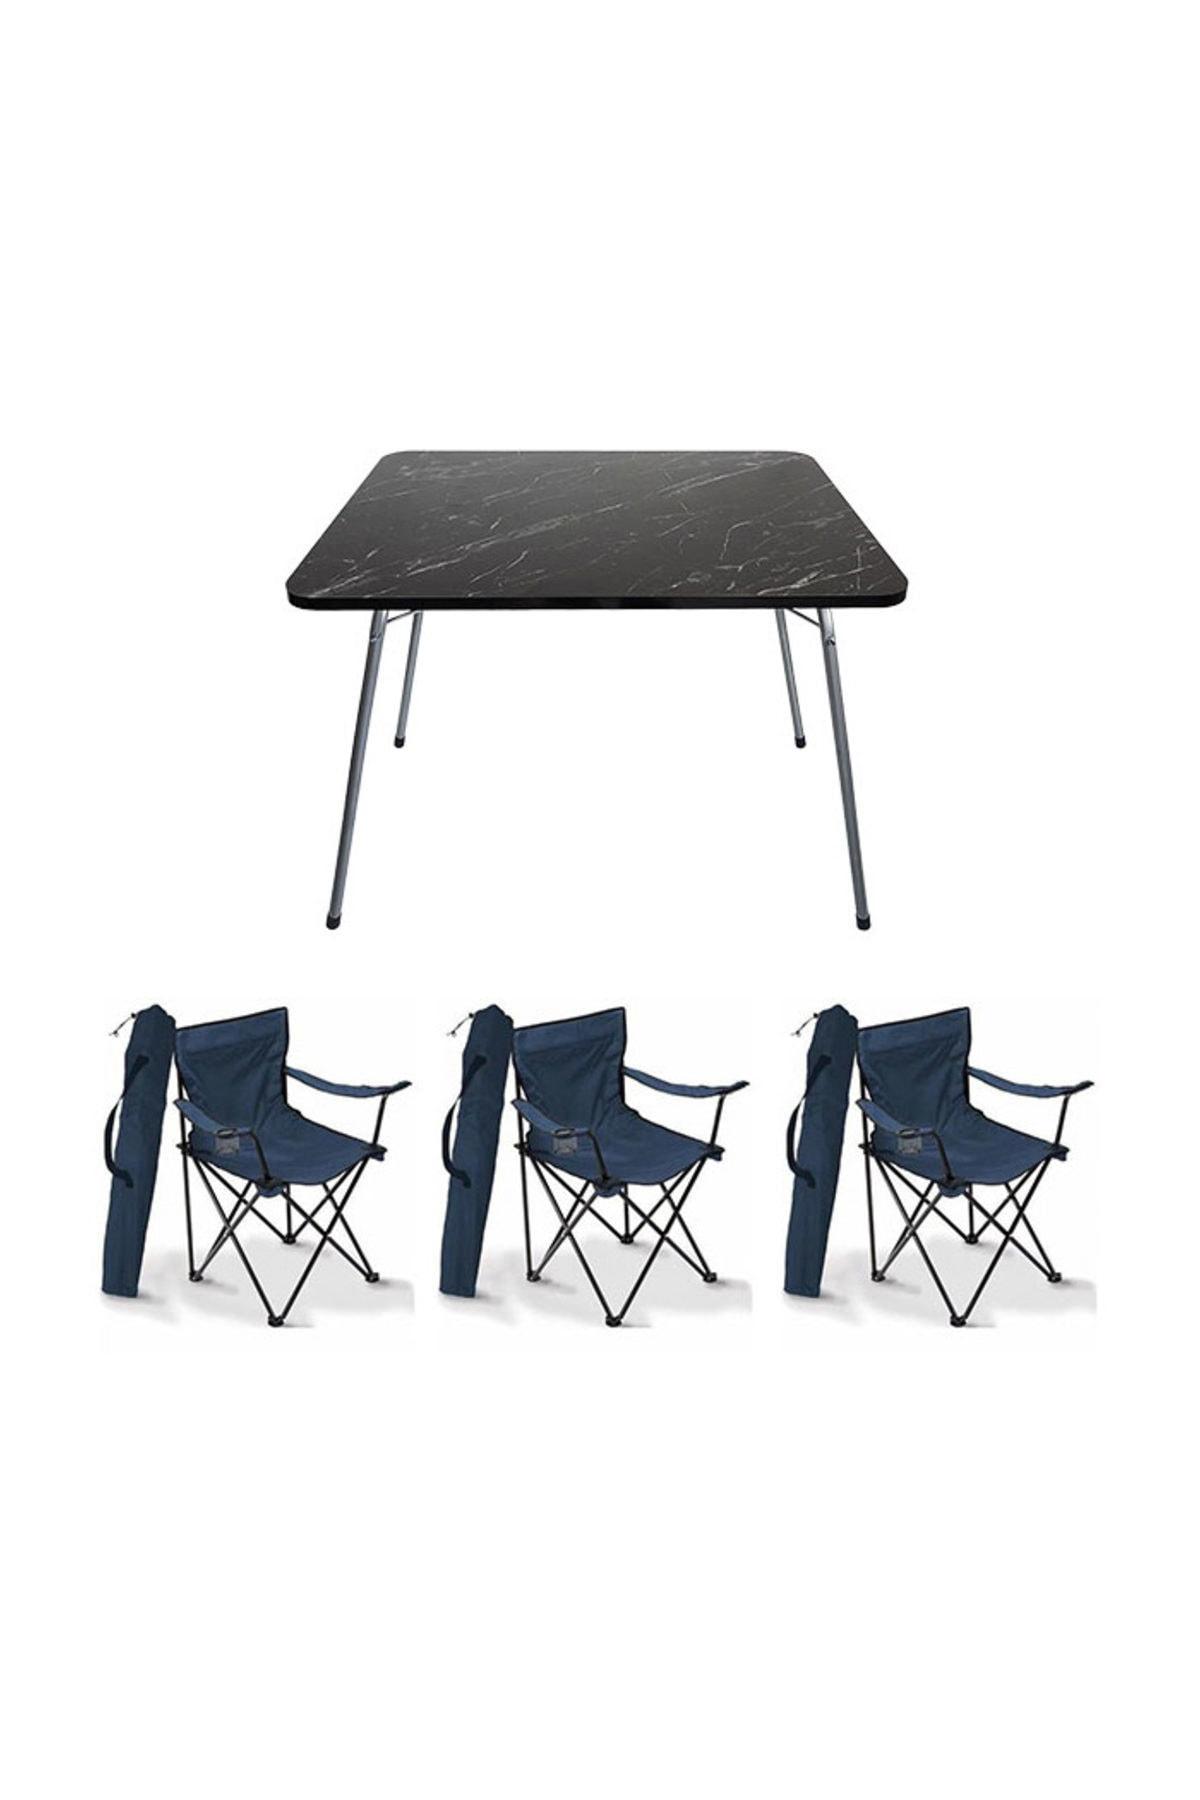 Bofigo 60 x 80 cm Tabureli Çantalı Dikdörtgen Granit Katlanır Kamp Masası Siyah + 3 Adet Katlanır Sandalye